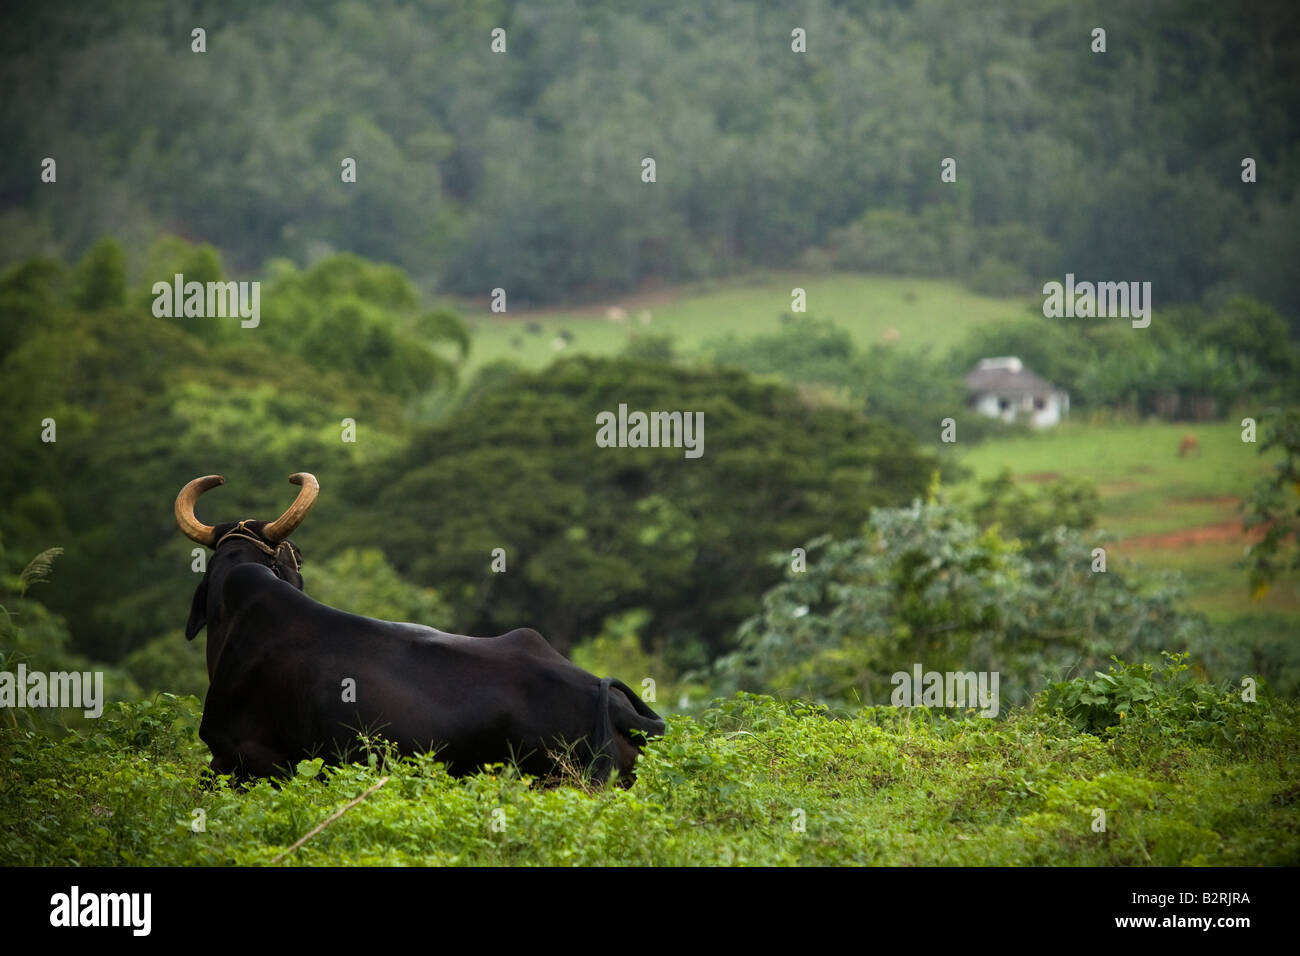 Bull lying in a field near Vinales, Cuba Stock Photo